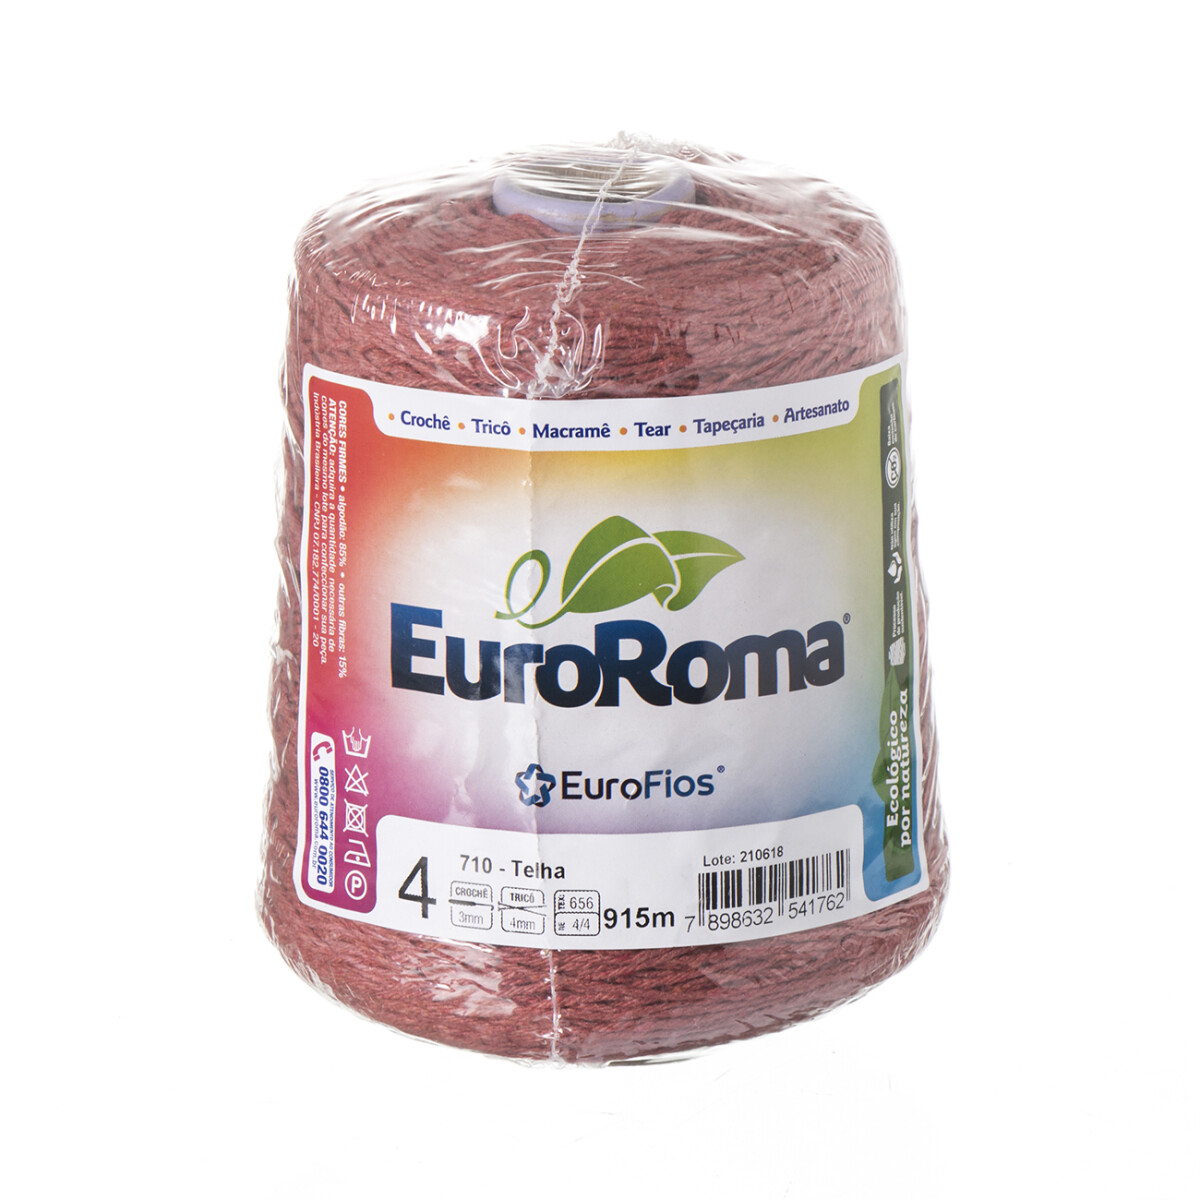 Euroroma algodón Colorido manualidades - telha 